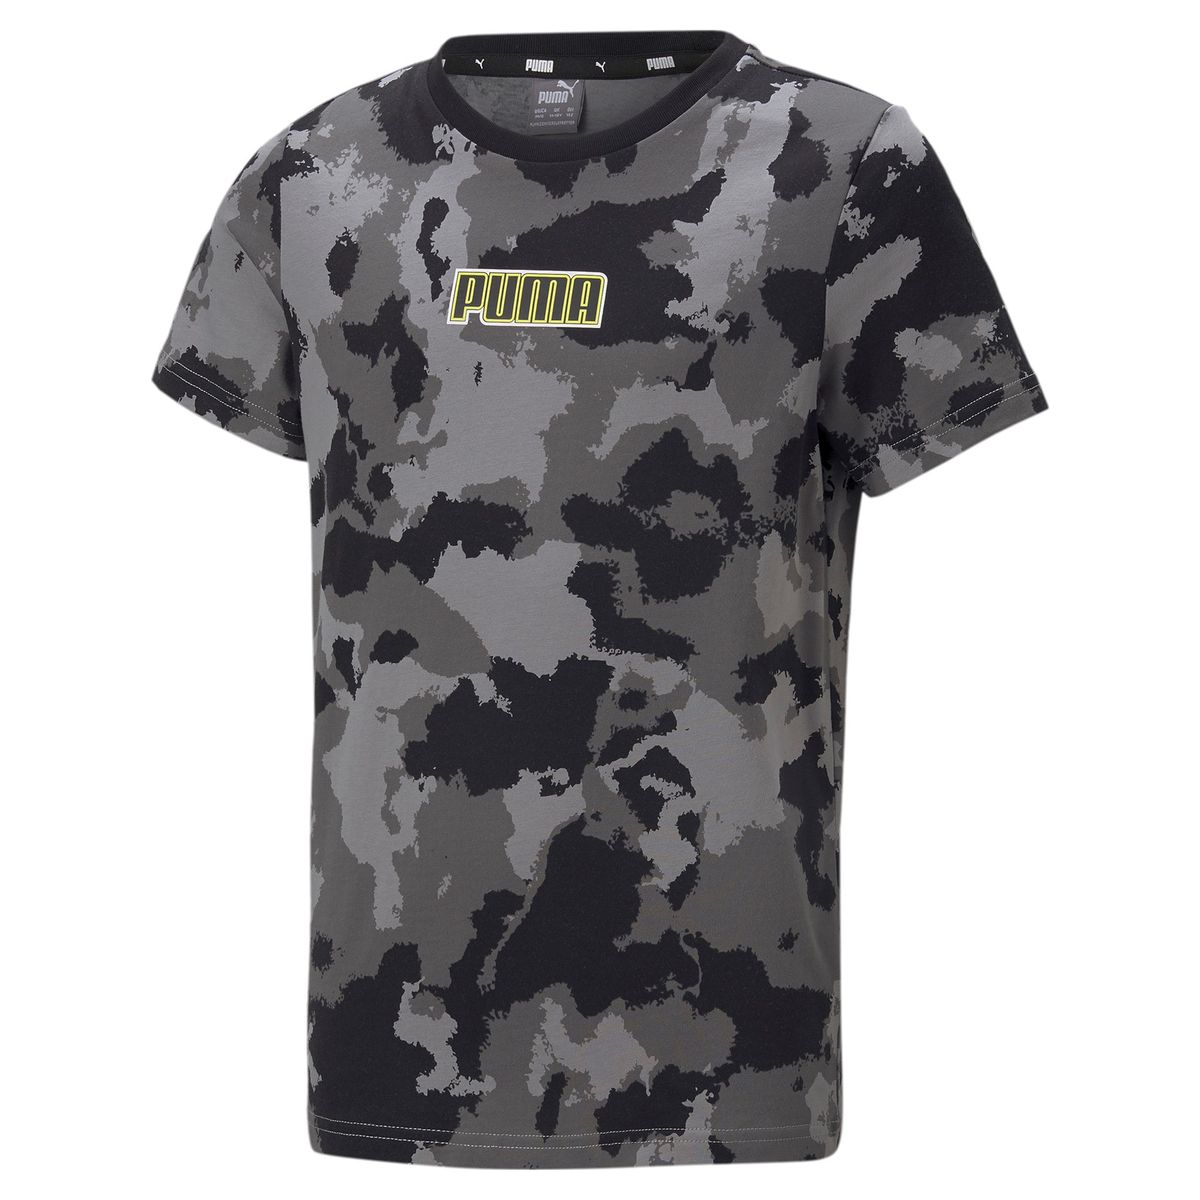 847283-01 - T-Shirt - Puma